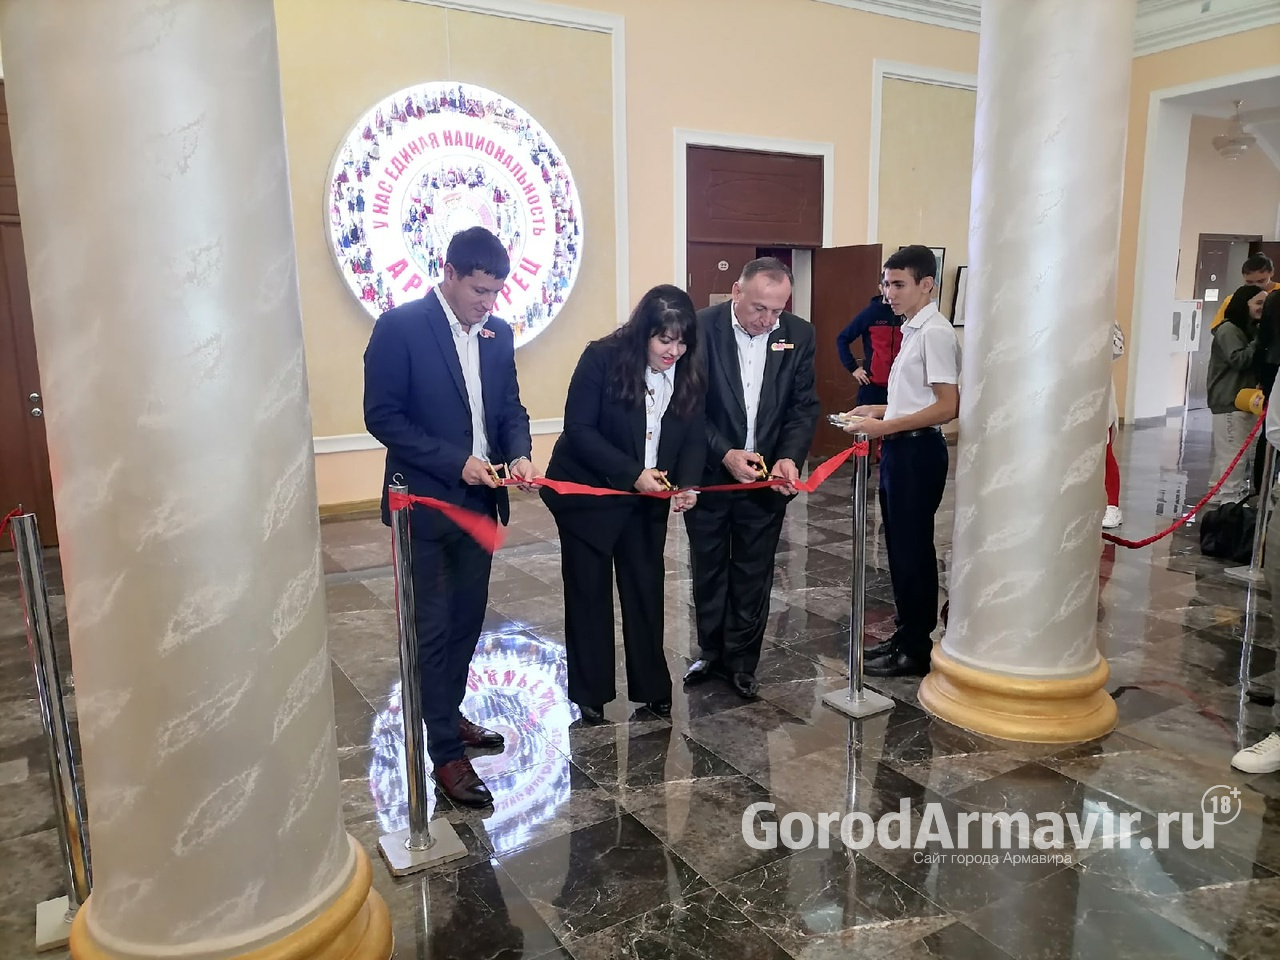 В городе открылась обновленная экспозиция "Этнокультурного музея народов Армавира"